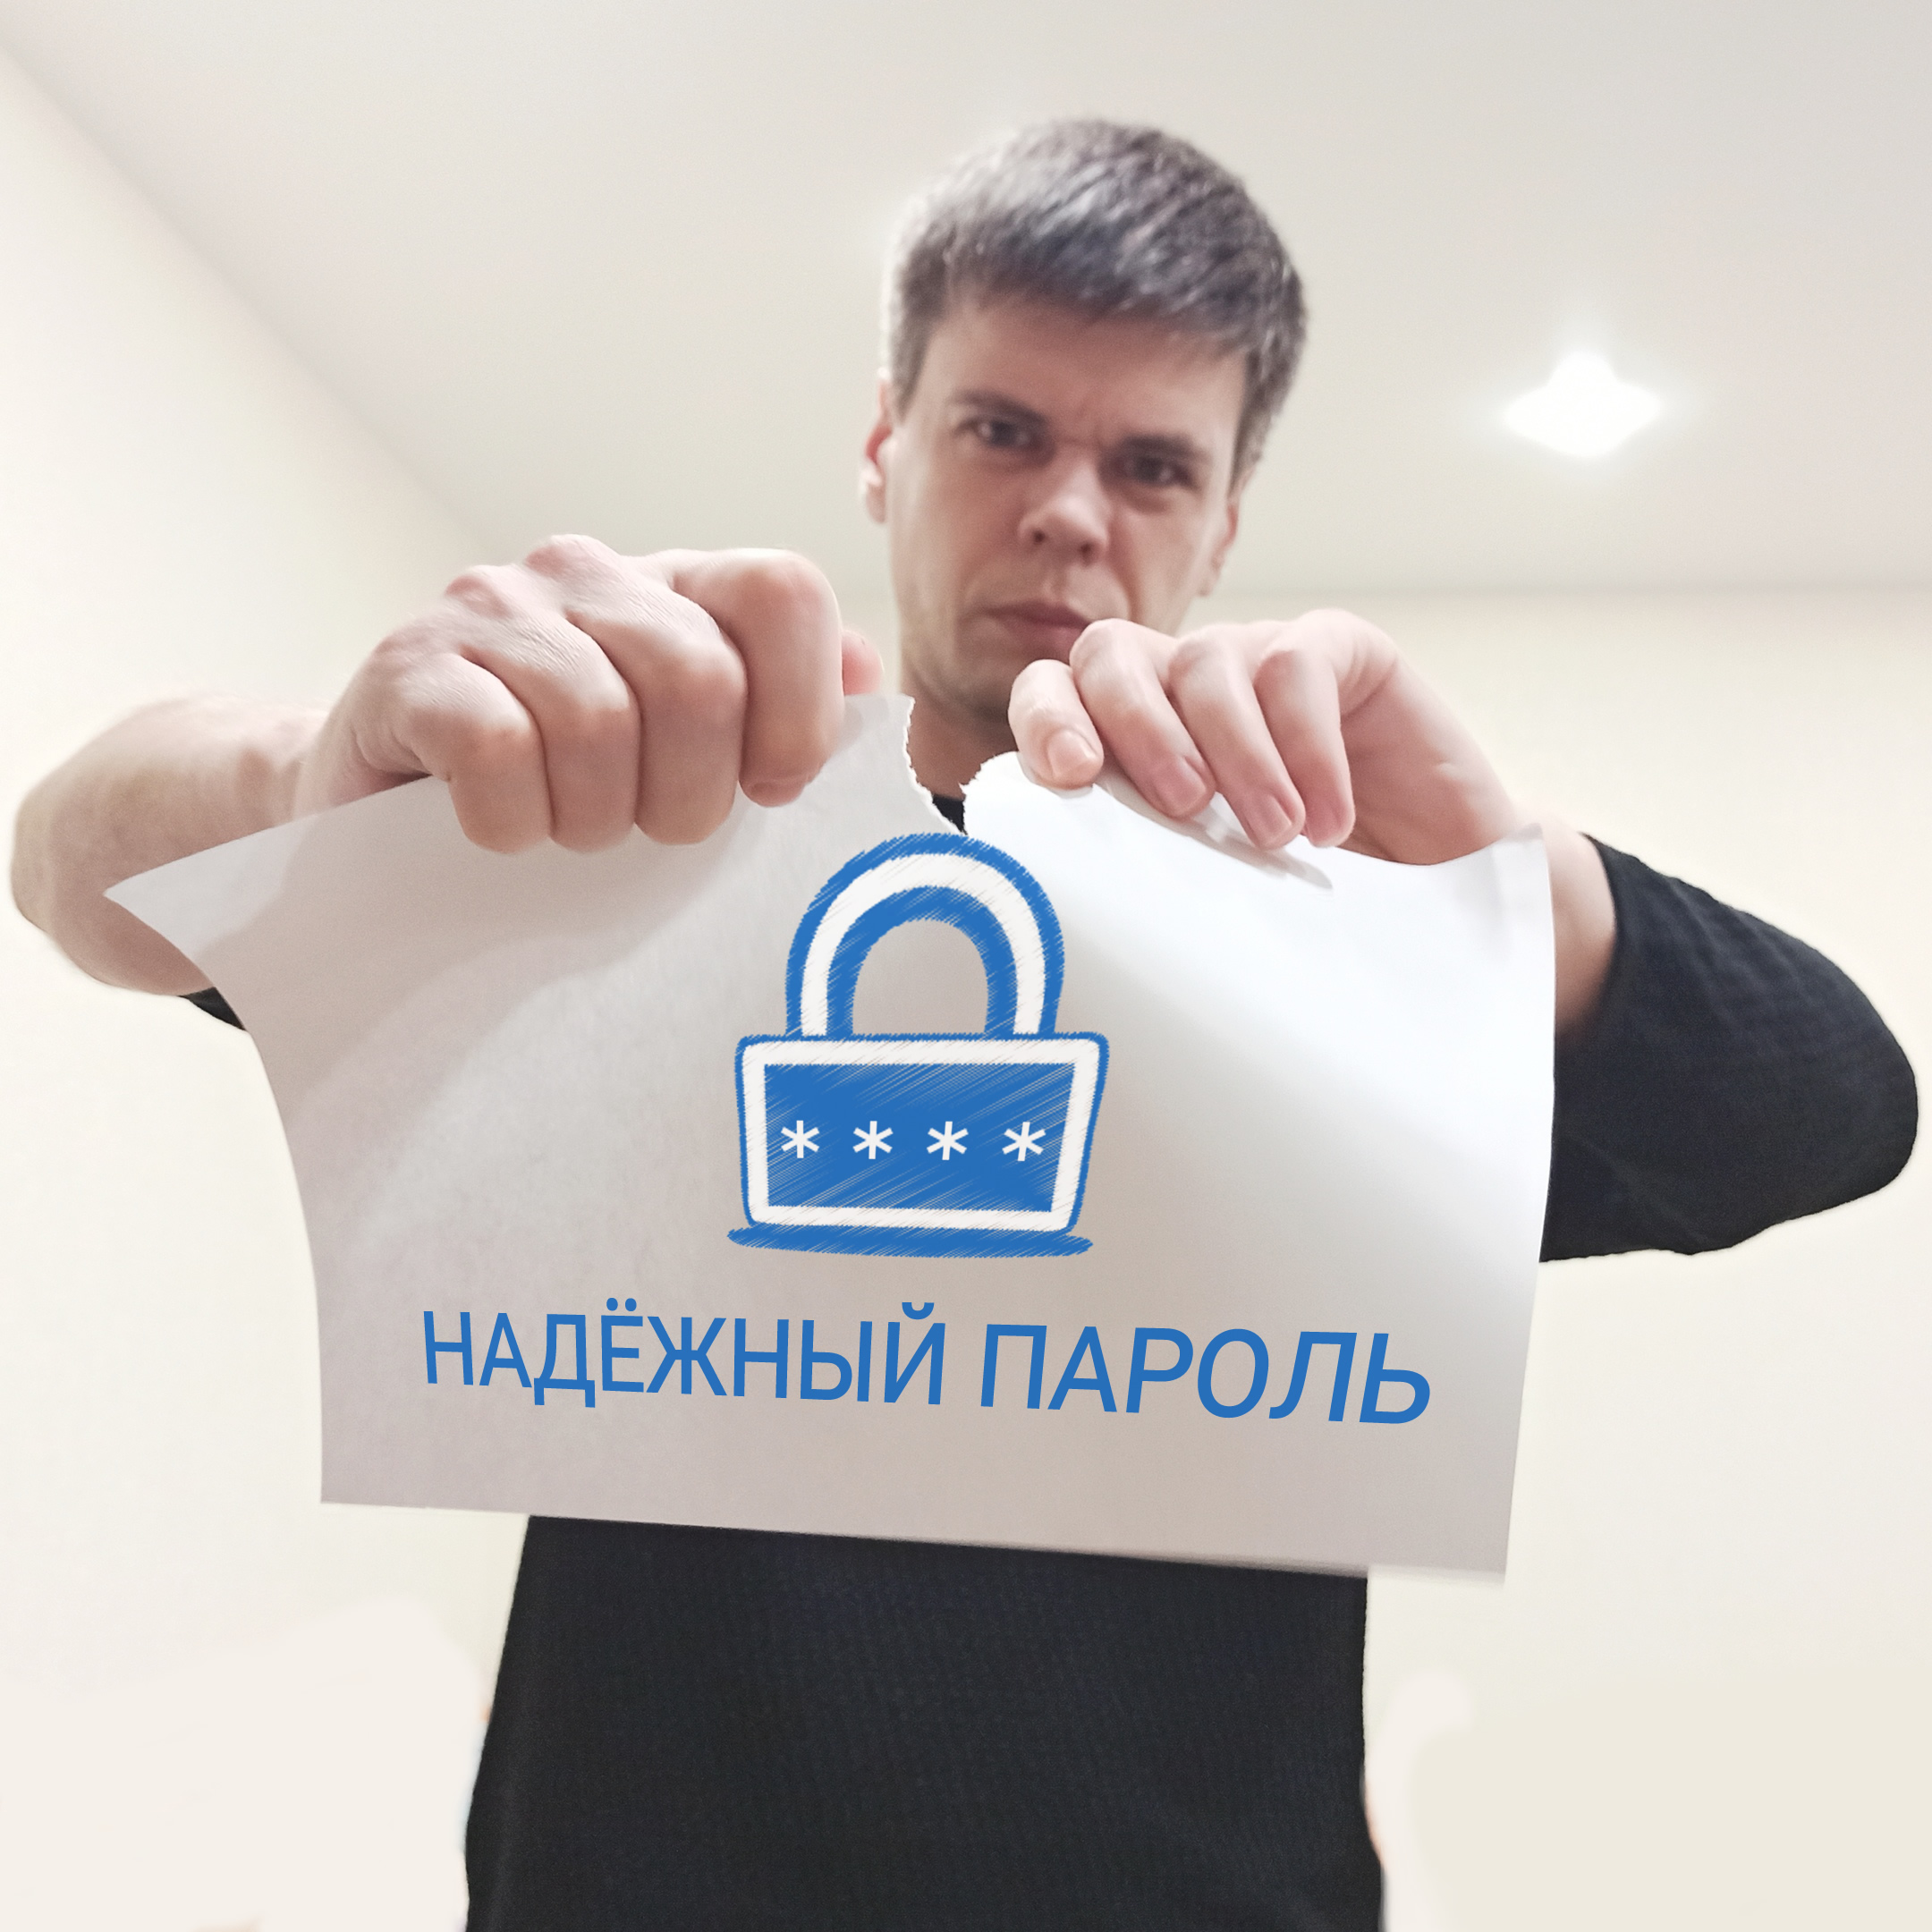 Андрей Латыпов про надежный пароль